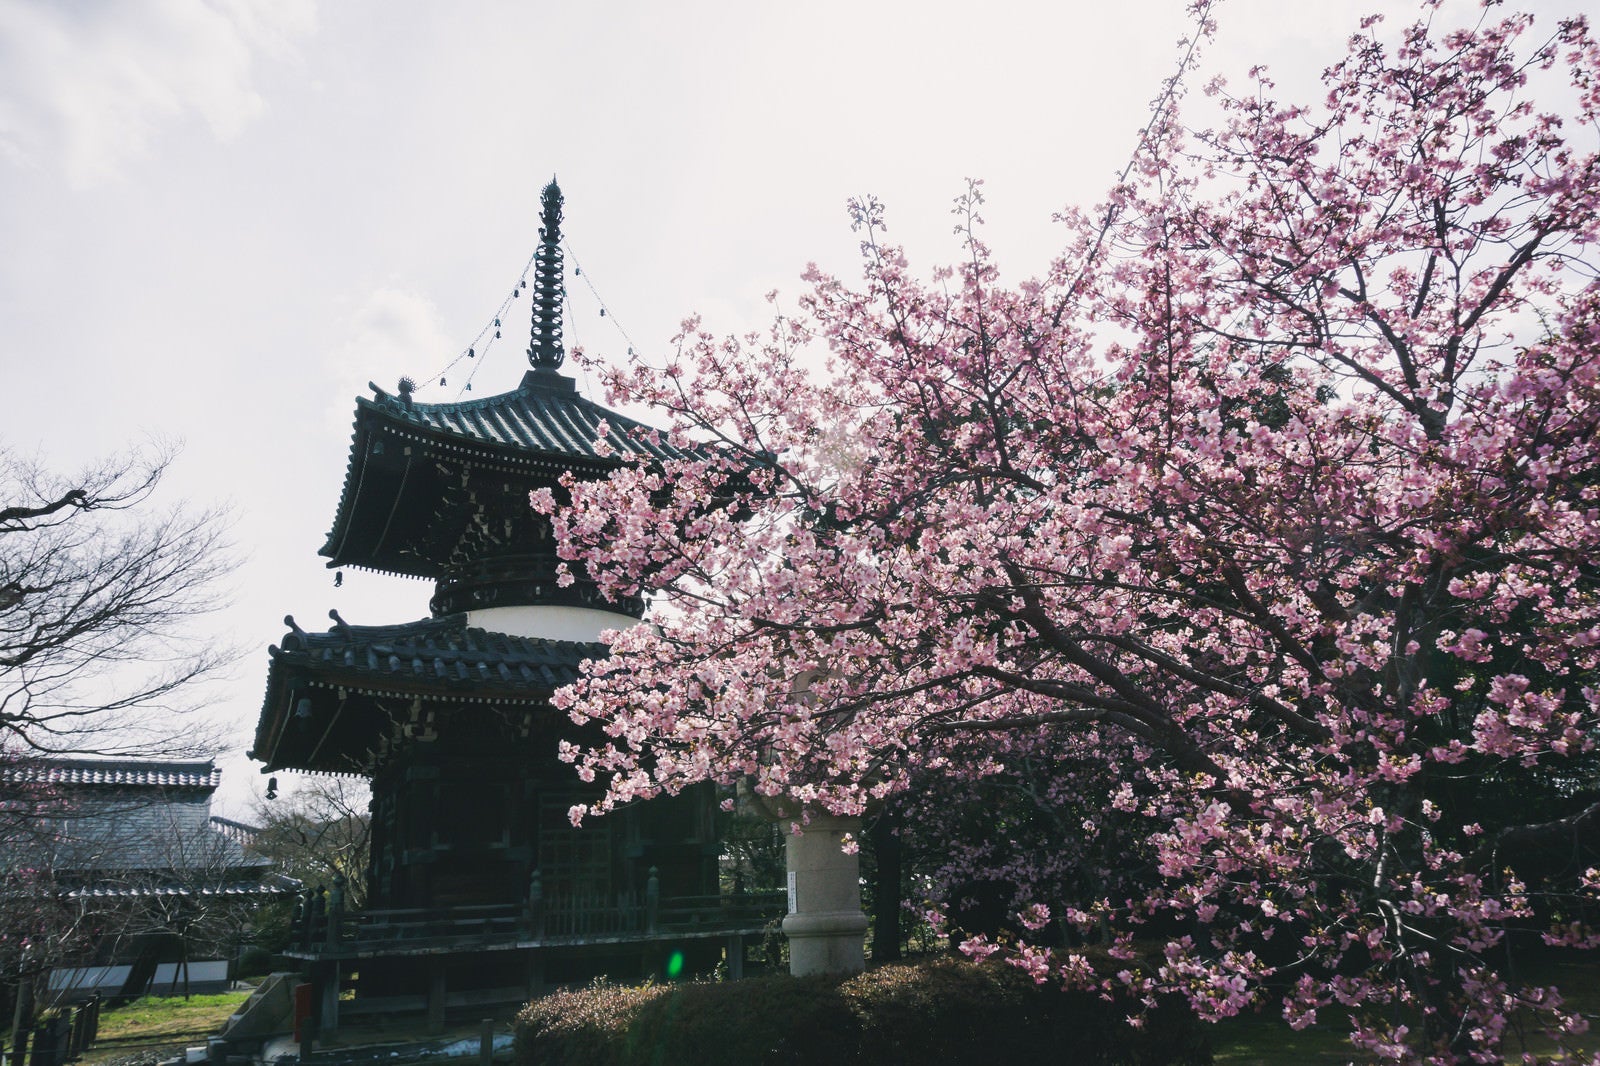 「逆光の中に姿を見せる清凉寺の多宝塔と満開の河津桜」の写真